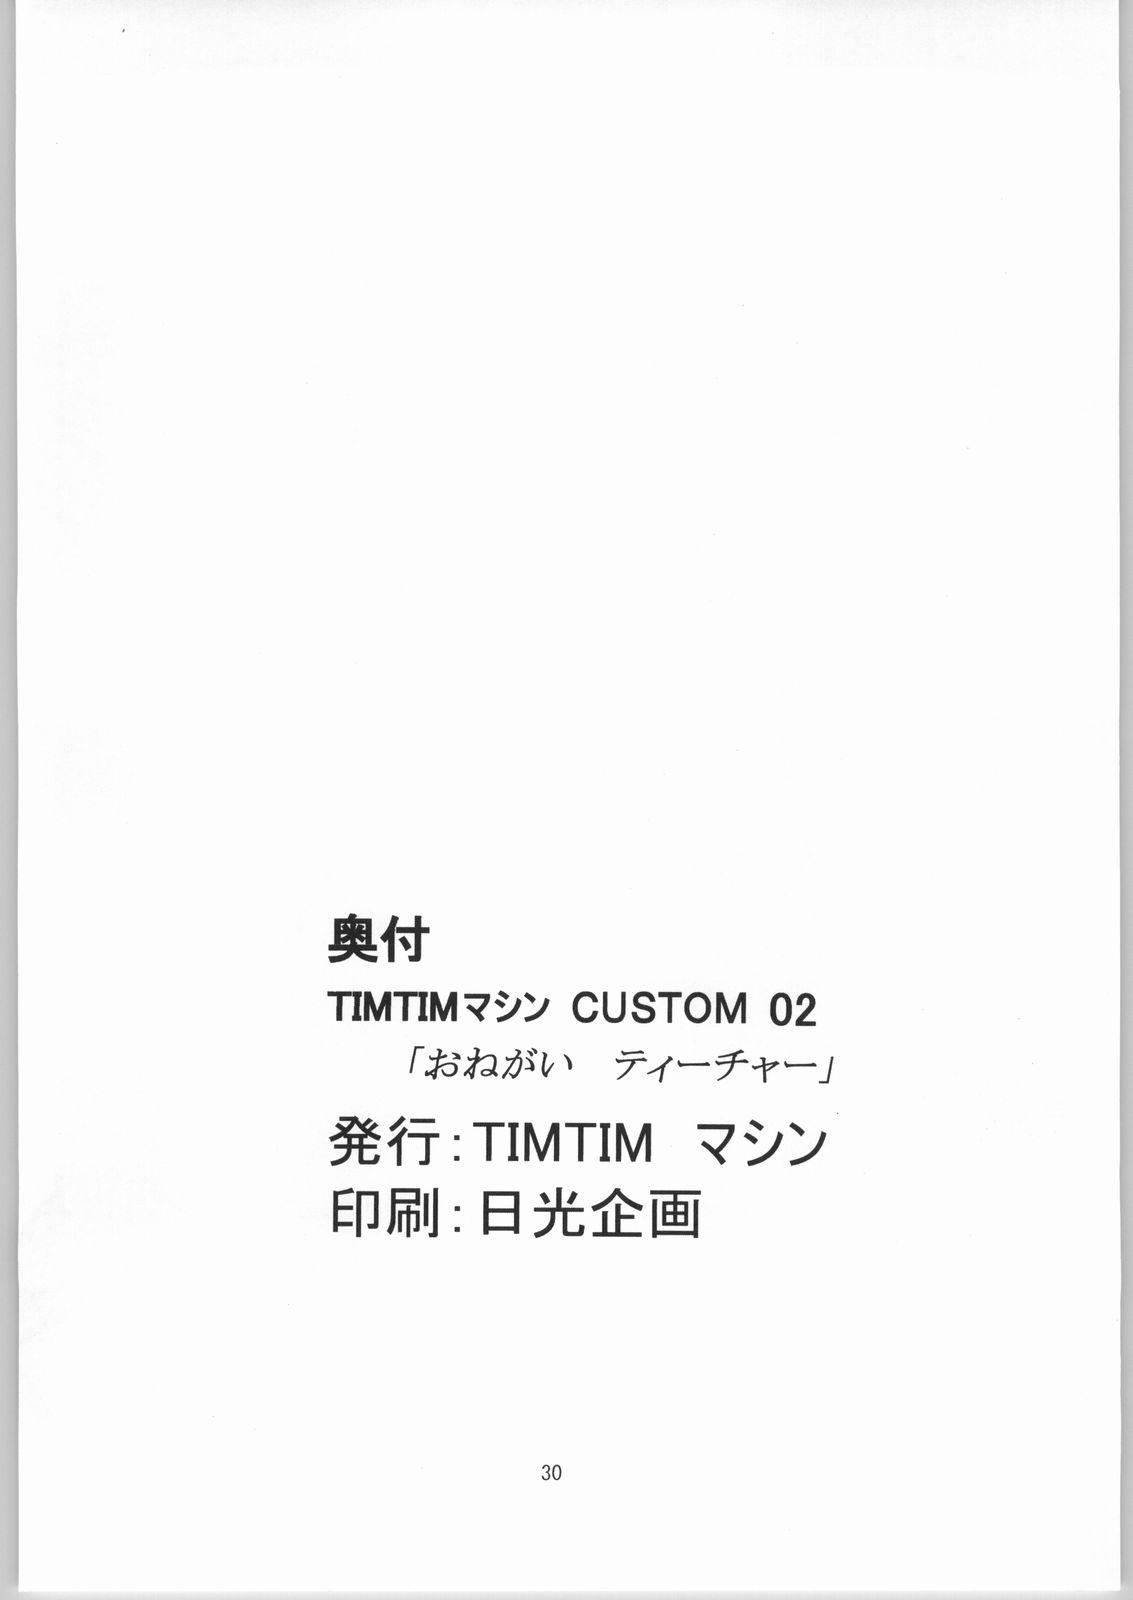 Tim Tim Machine Custom 02 28